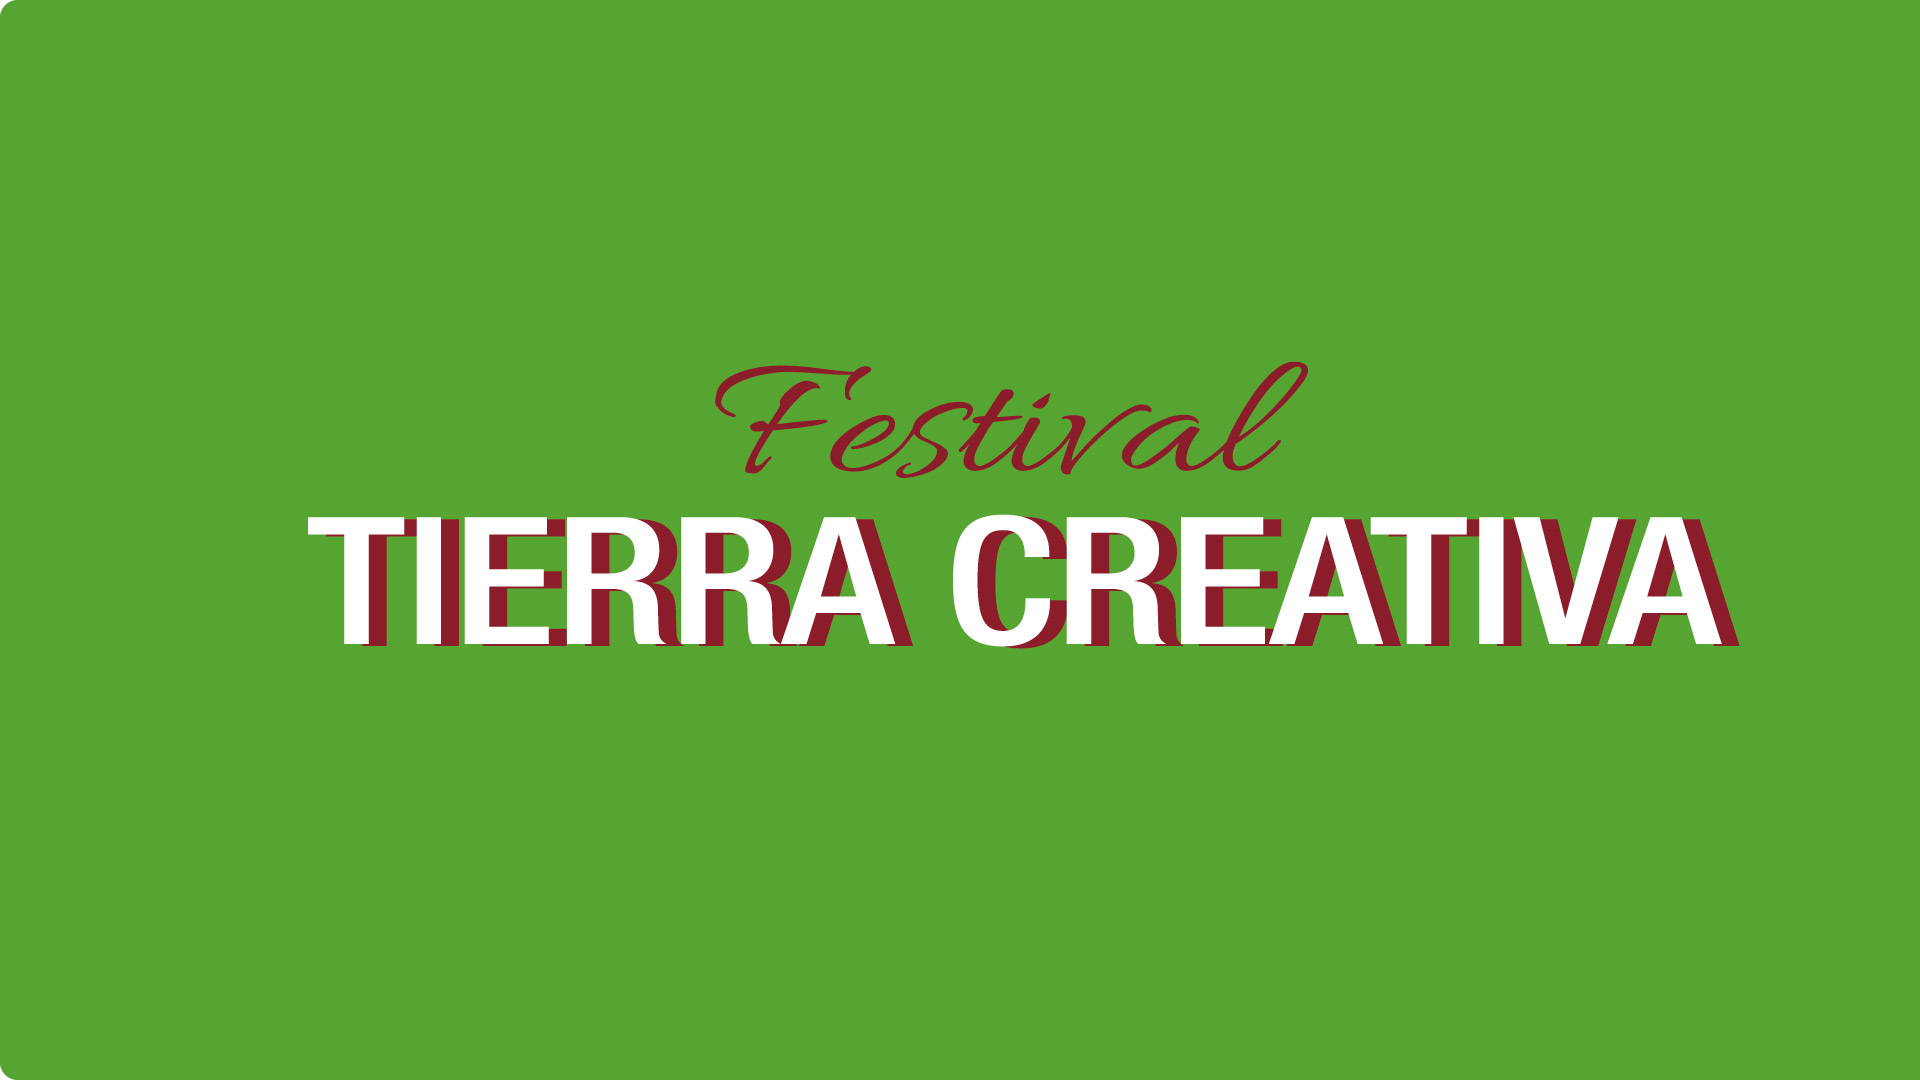 Música, emprendimientos y muestras artísticas en el Festival tierra creativa